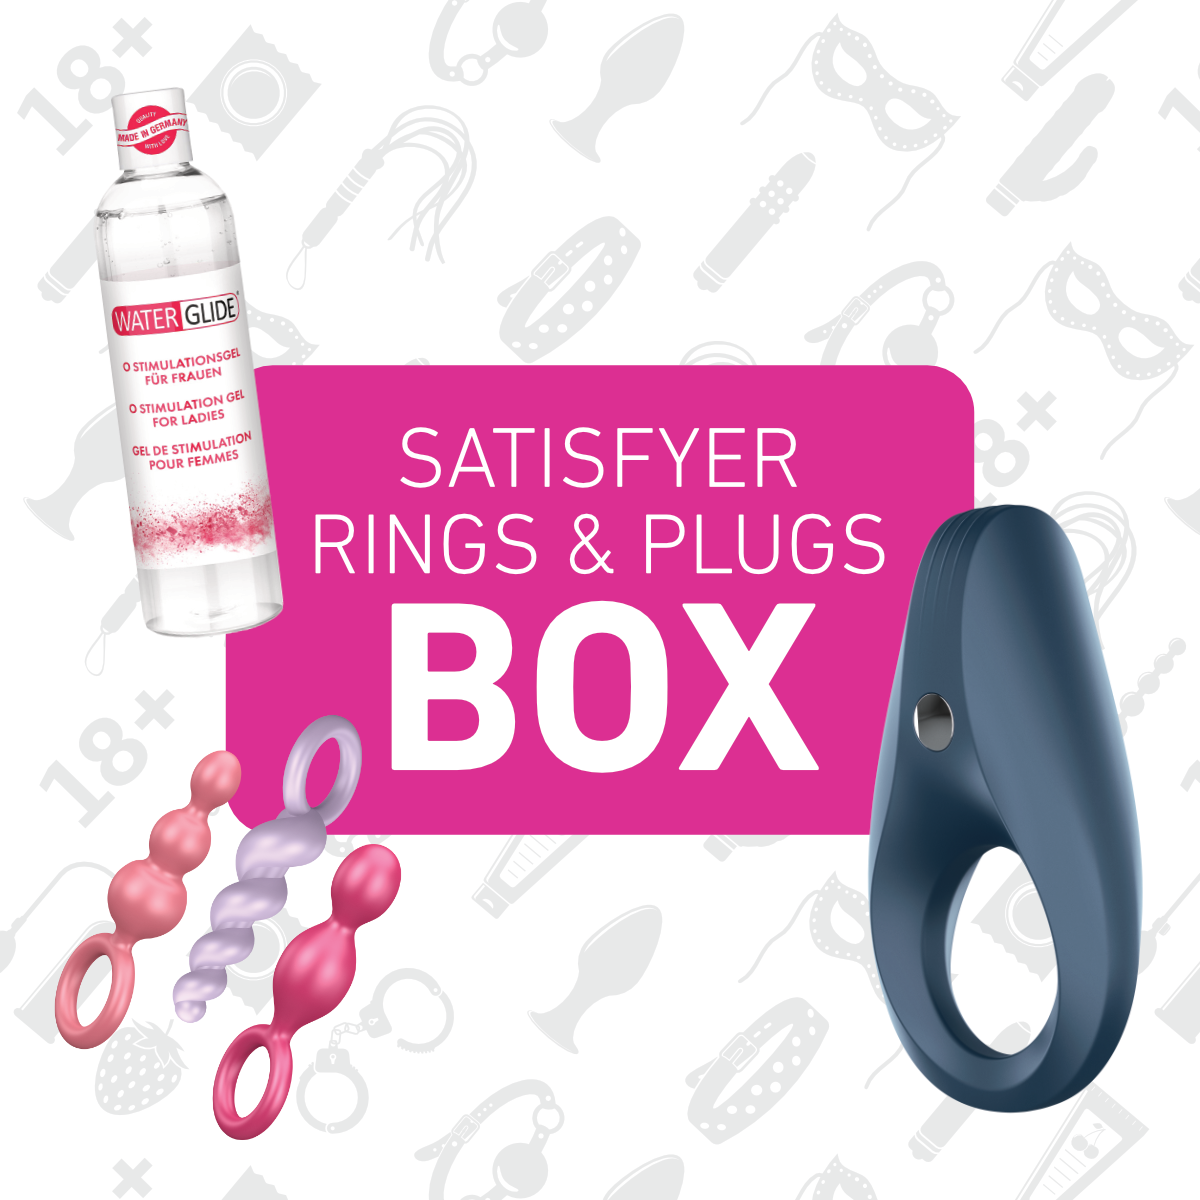 Satisfyer Rings & Plugs Box